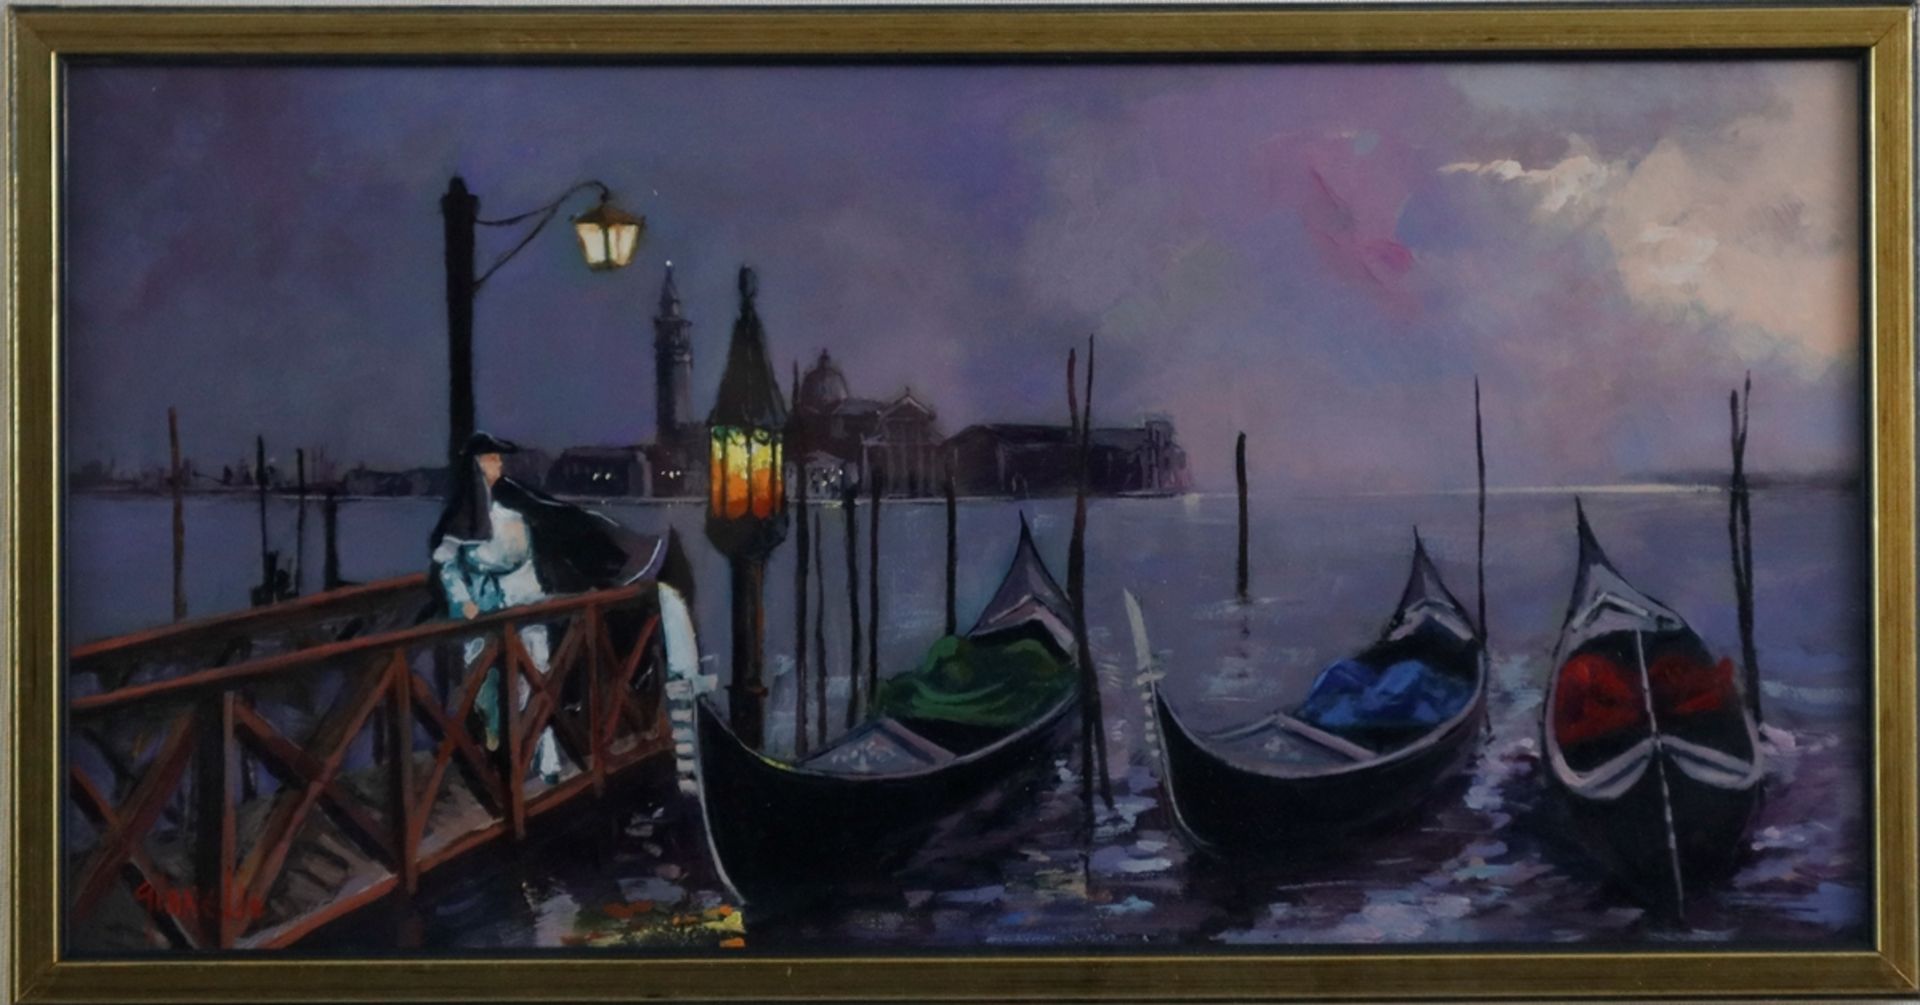 Gianello, Mario (* 1935 in Bologna) - Venezianische Gondeln in sanftem Abendlicht, auf dem von Late